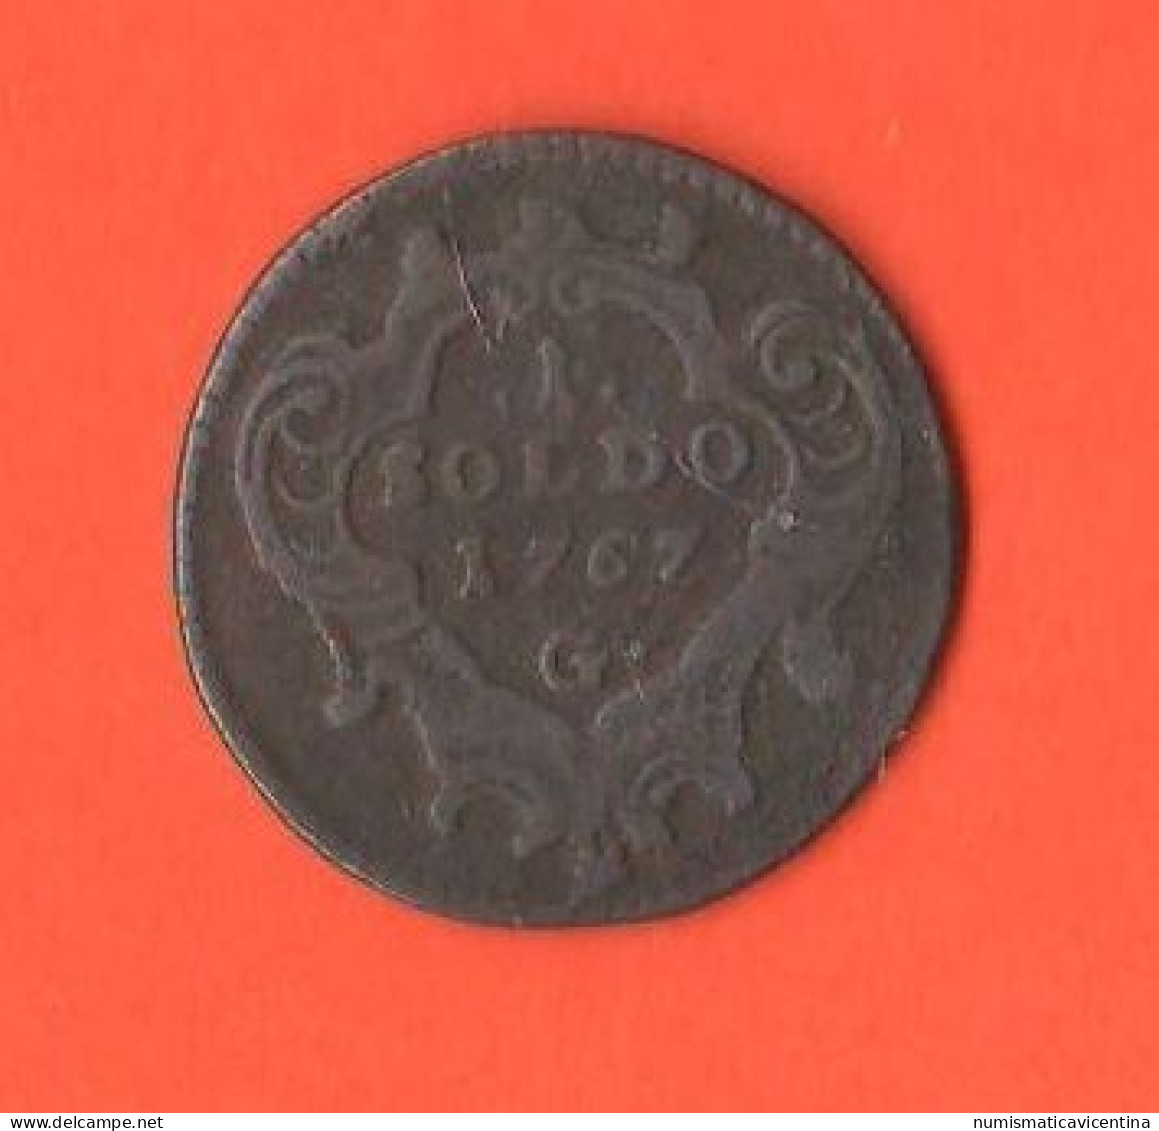 Lombardo Veneto 1 Soldo 1767 Gorizia Gorz  Austria Administration Copper Coin - Amministrazione Austriaca